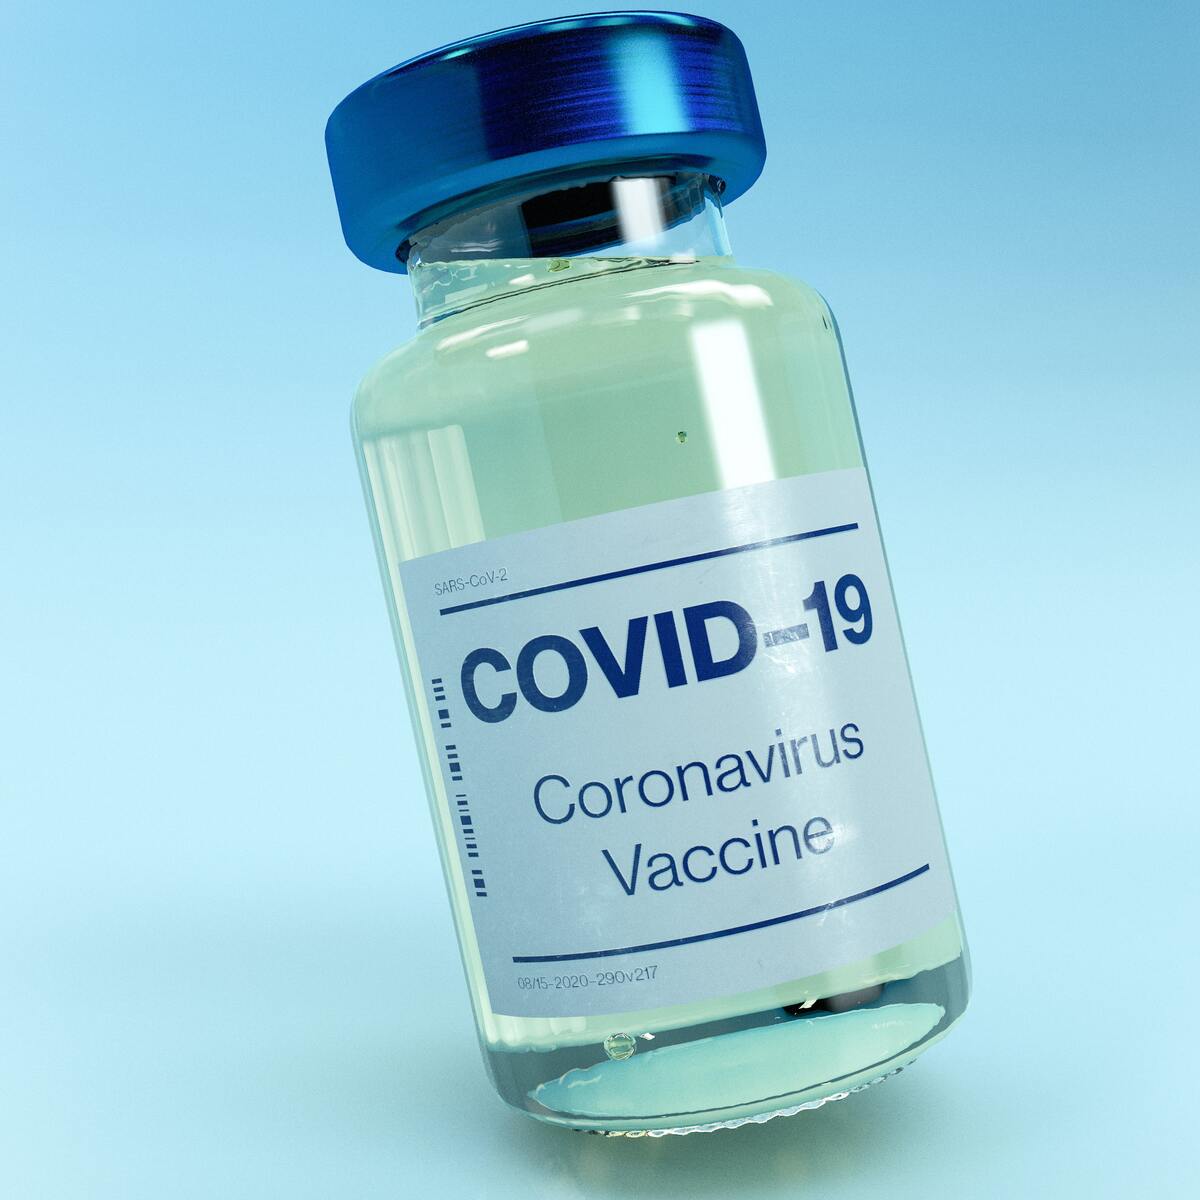 Pcv20 Vaccine Cost